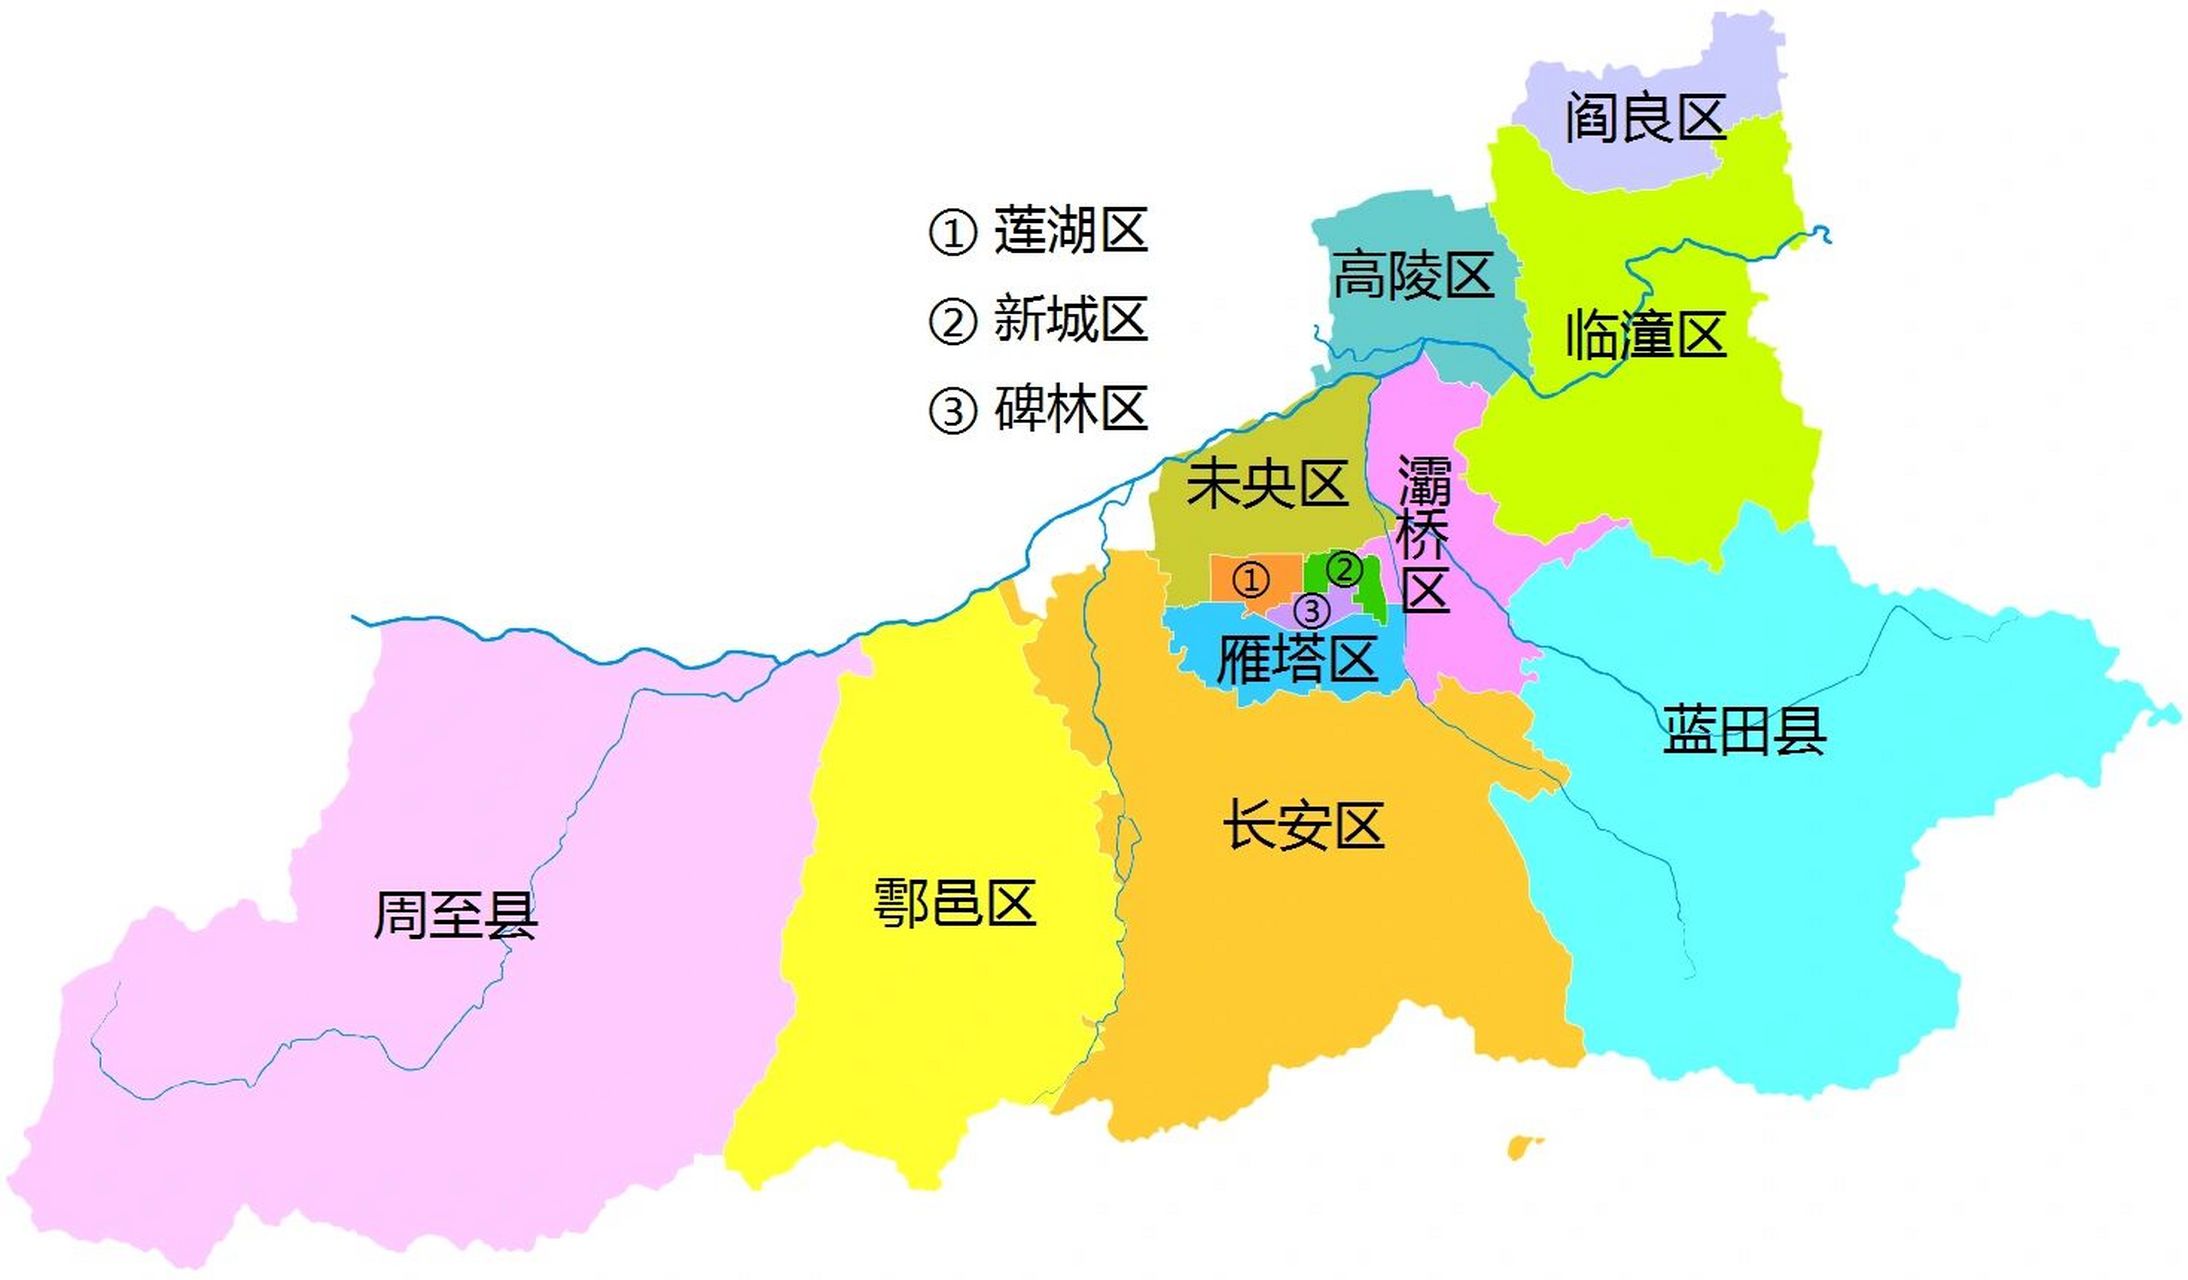 西安行政区划 西安市,陕西省省会,副省级市,总面积为10108平方公里